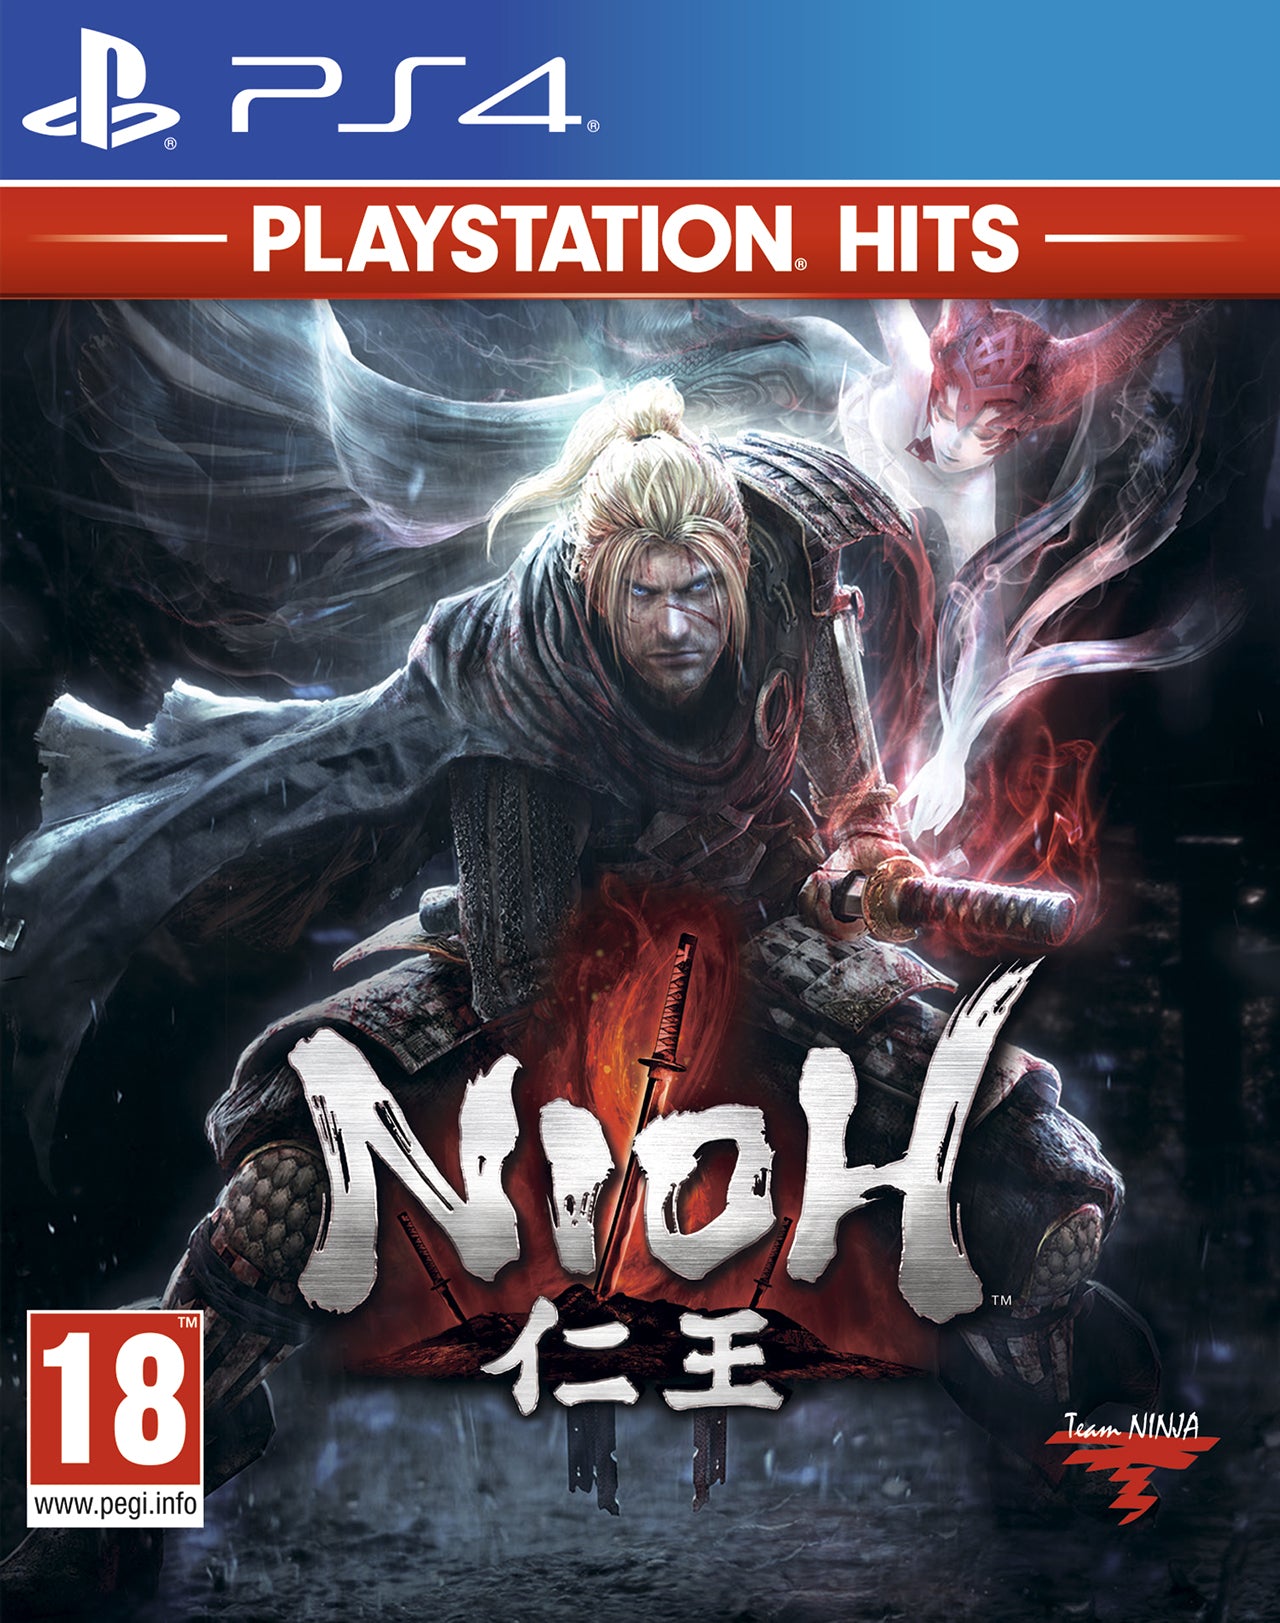 PlayStation Hits Nioh - PS4